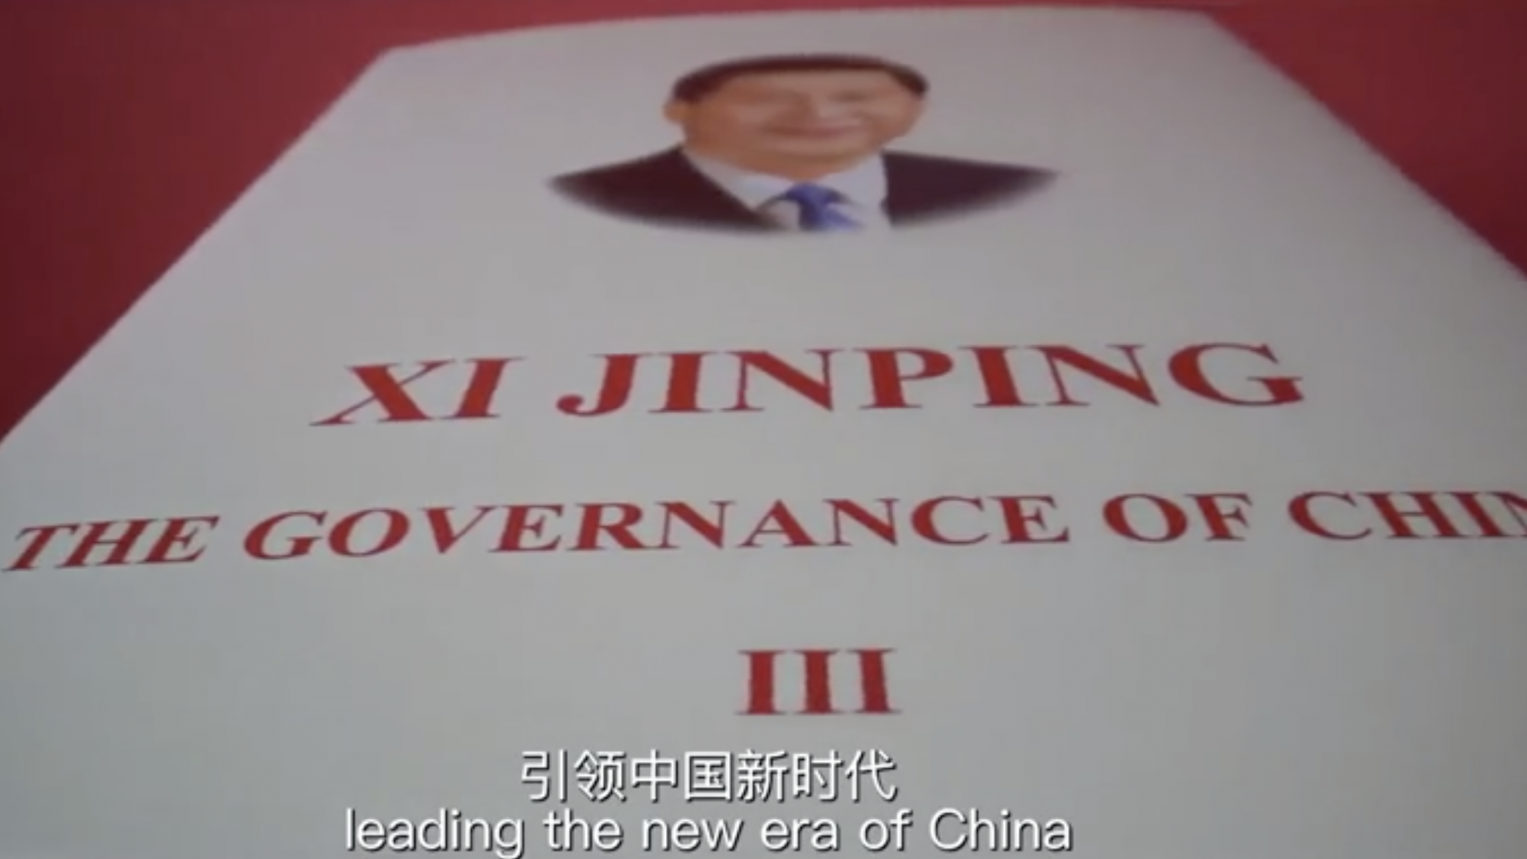 短视频《〈习近平谈治国理政〉第三卷——引领中国新时代》